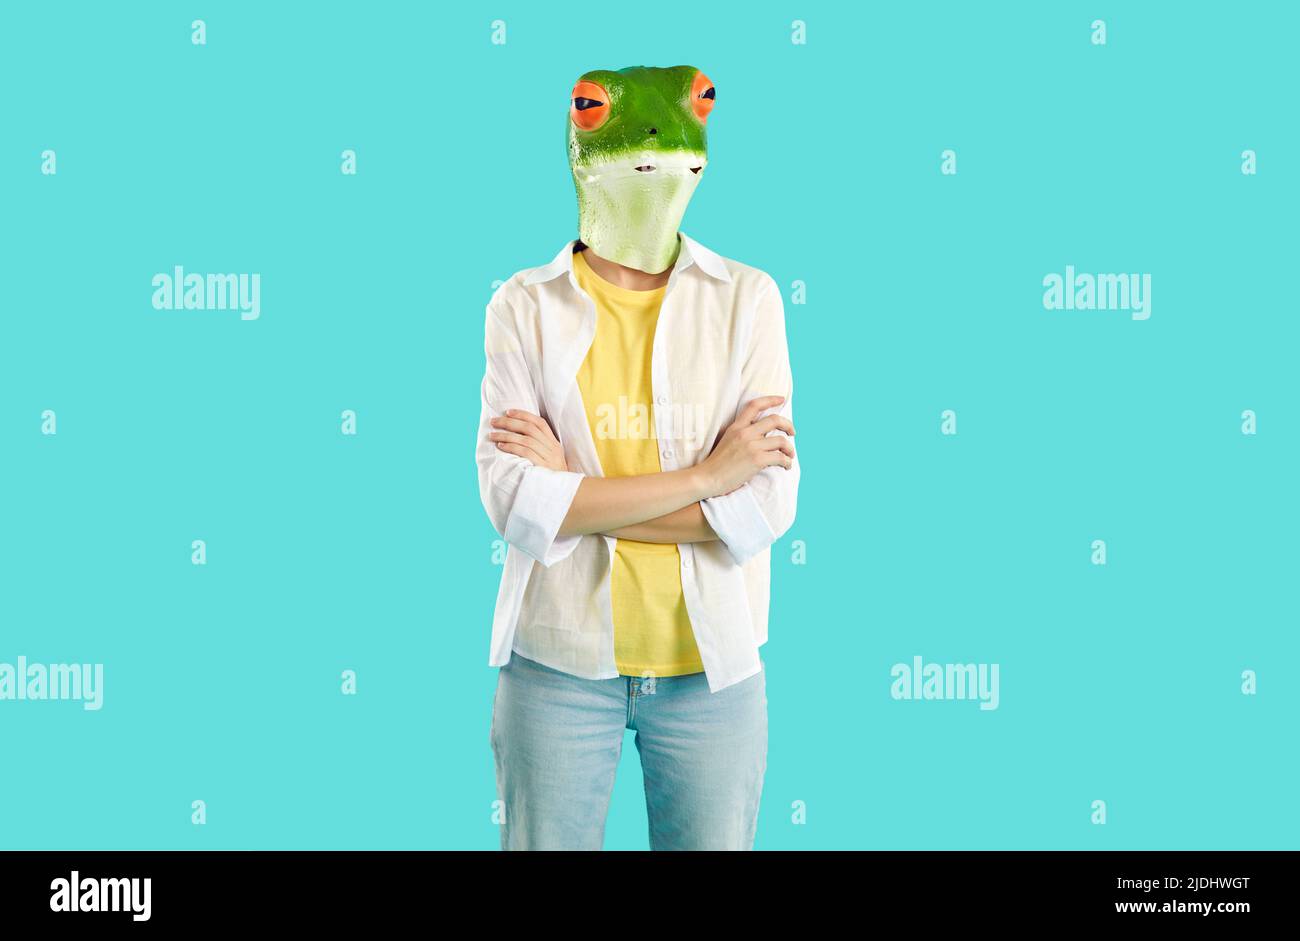 Cool excentrique personne dans le masque de tête de grenouille Banque D'Images